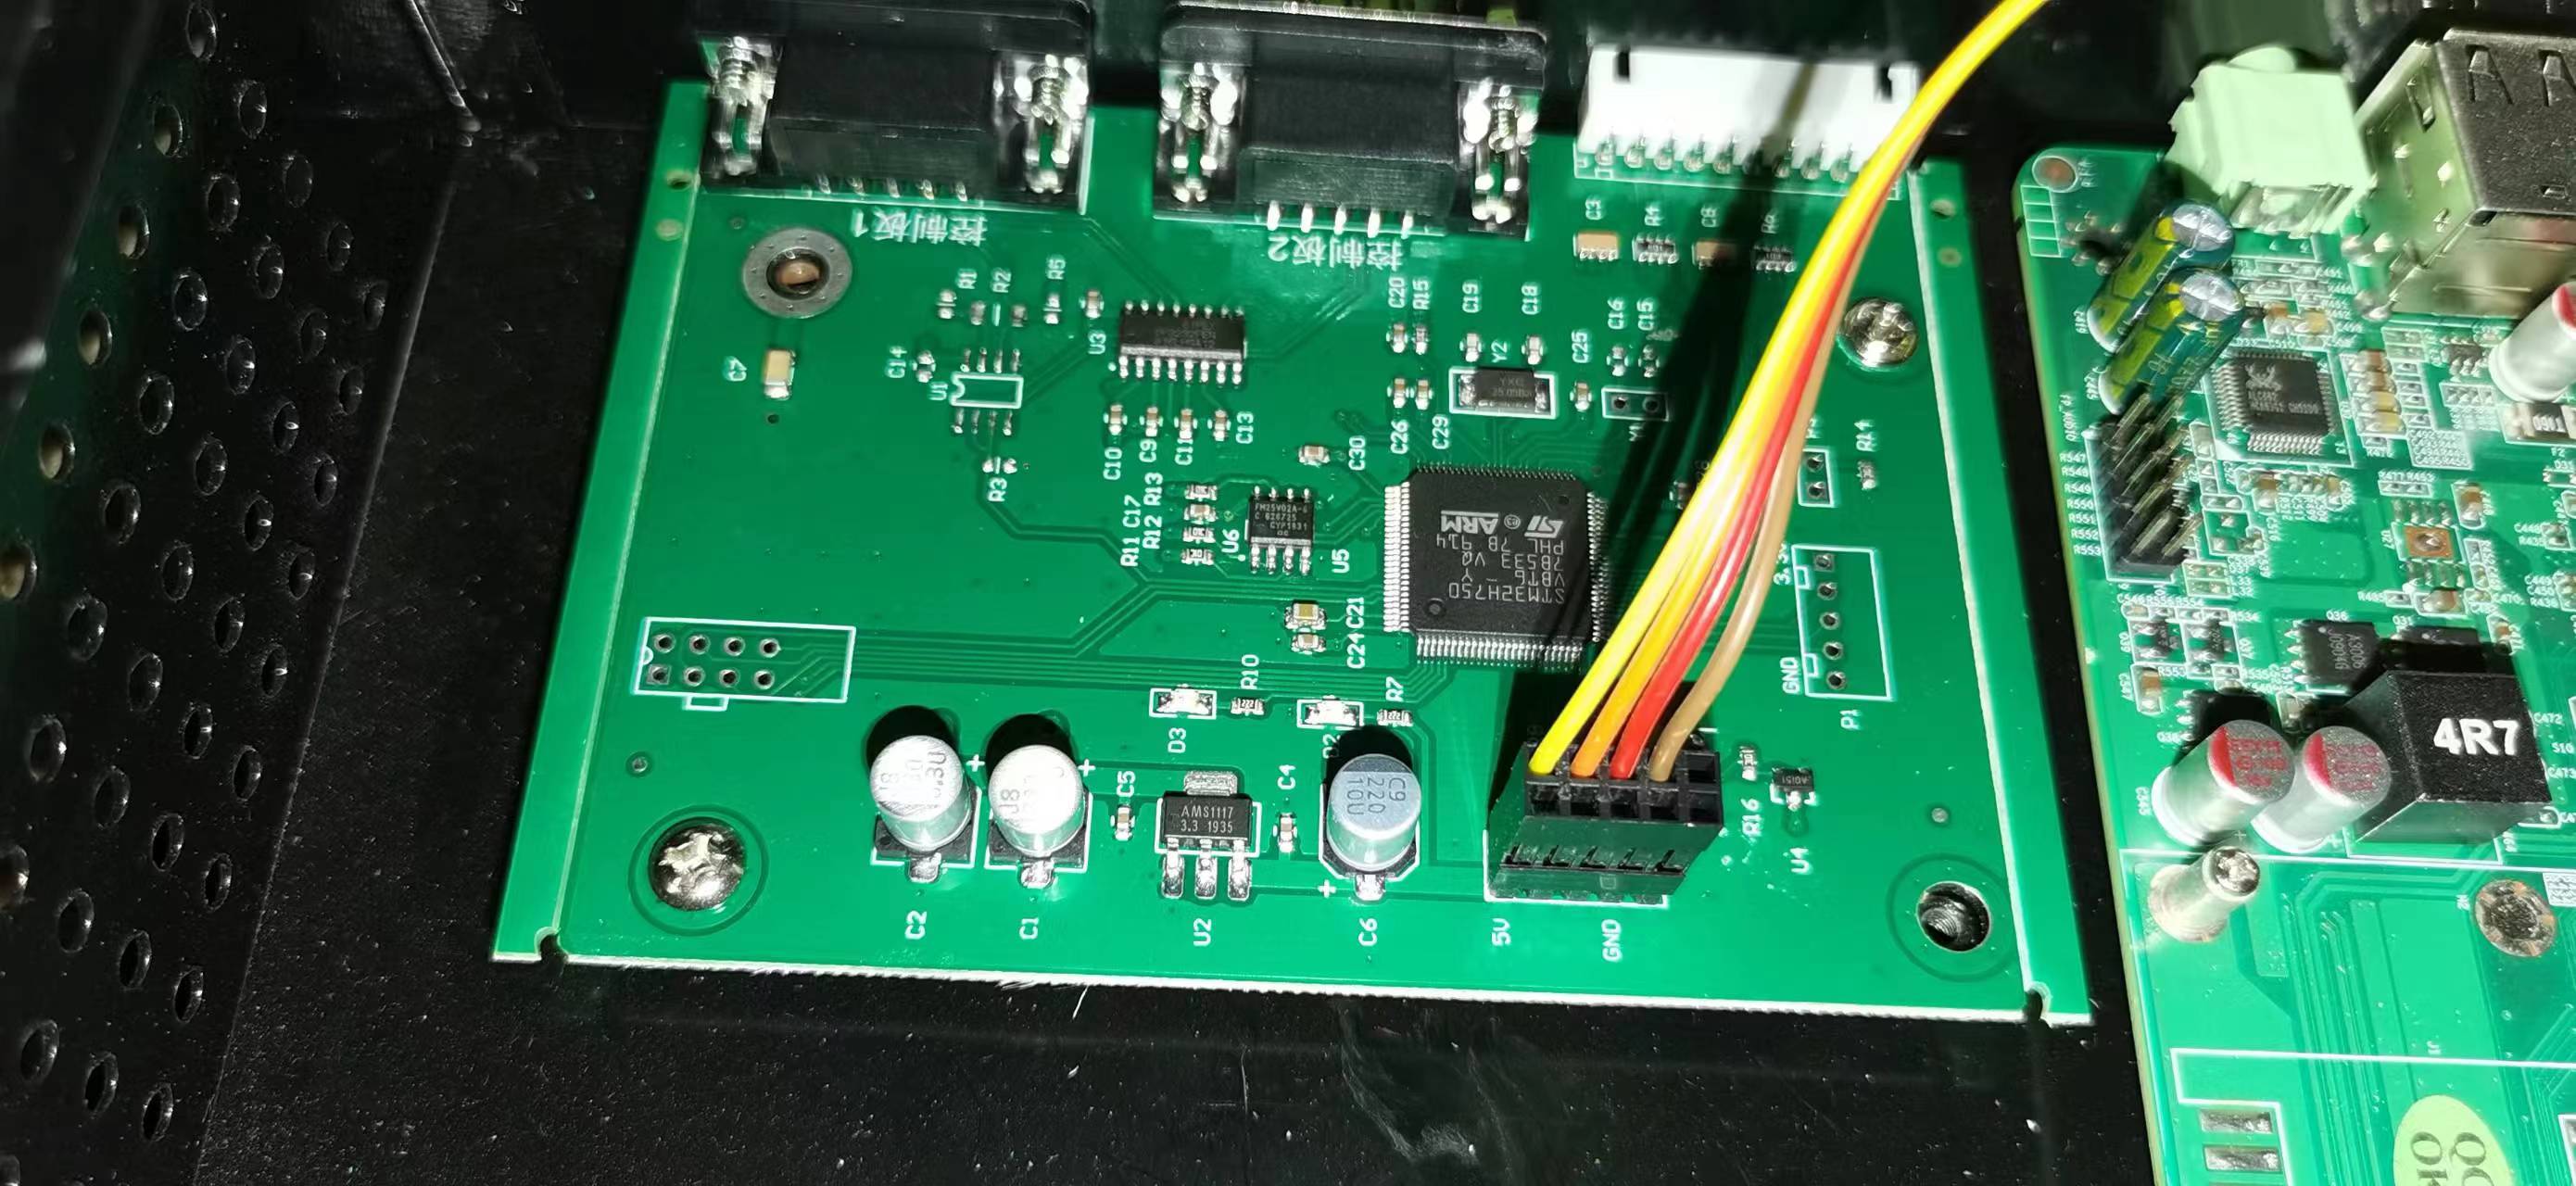 你好，我有个硬件困扰，STM32H750VBT6芯片没有办法硬破，我需要把程序提出来，有懂这块的吗？